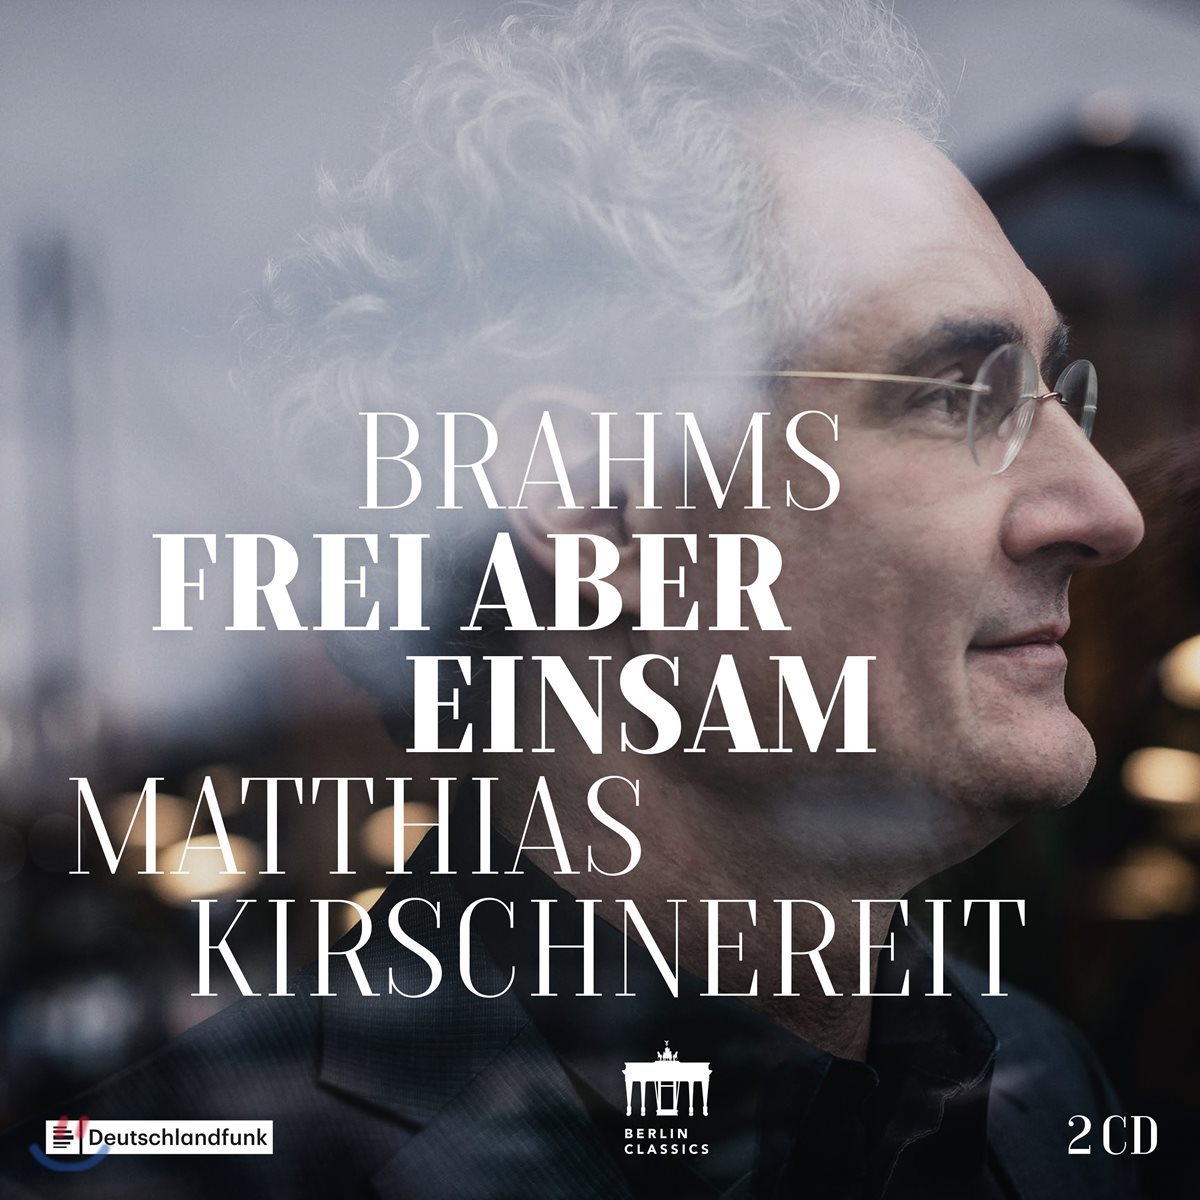 Matthias Kirschnereit 브람스: 피아노 소나타 3번, 피아노 오중주 (Brahms: Frei aber Einsam)